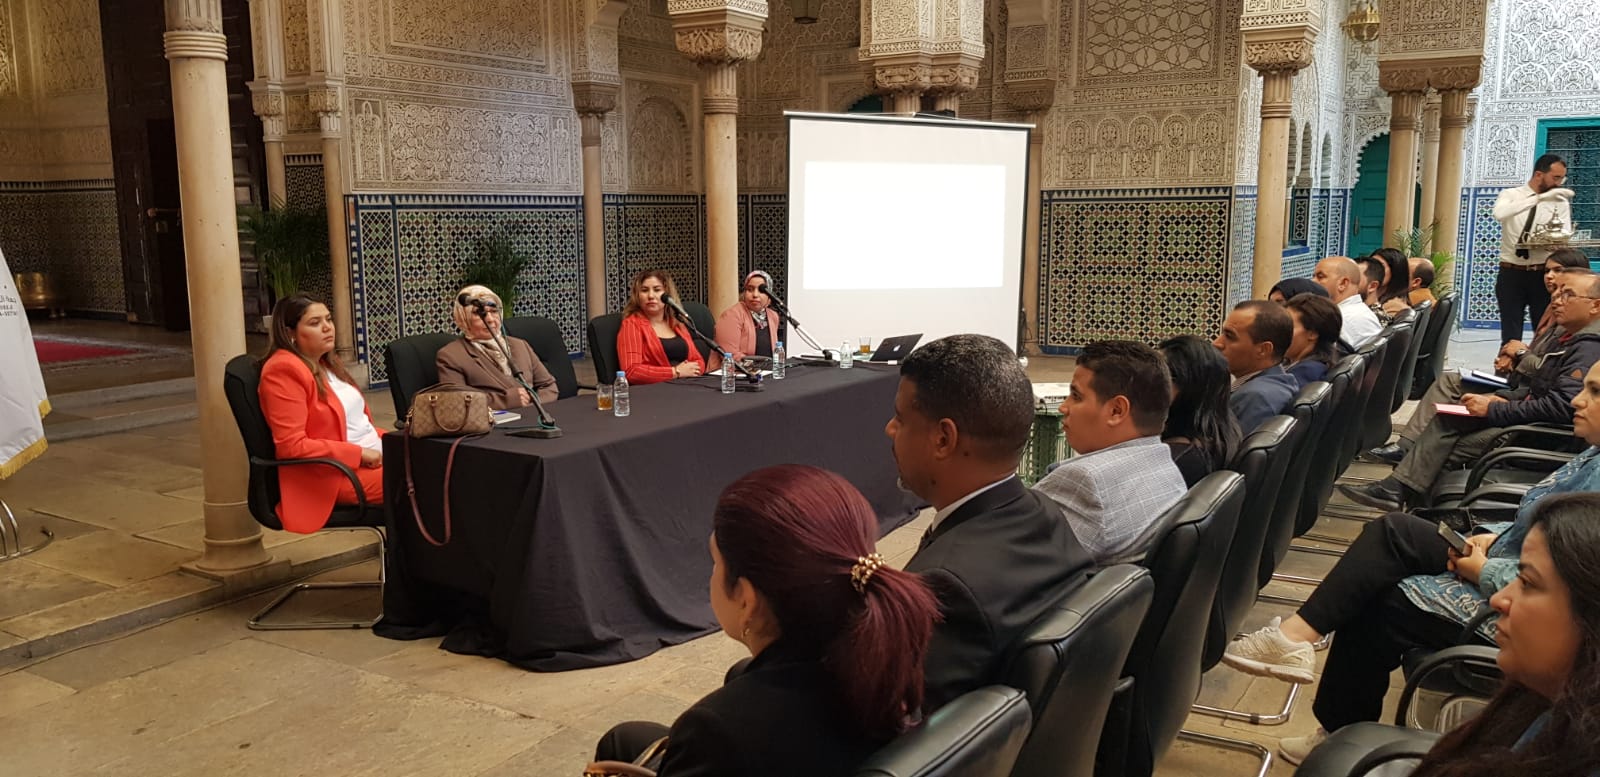 لقاء تشاوري من أجل الإعداد المشترك لمشروع برنامج مجلس الجهة في إطار الشبكة المغربية للجماعات الترابية المنفتحة